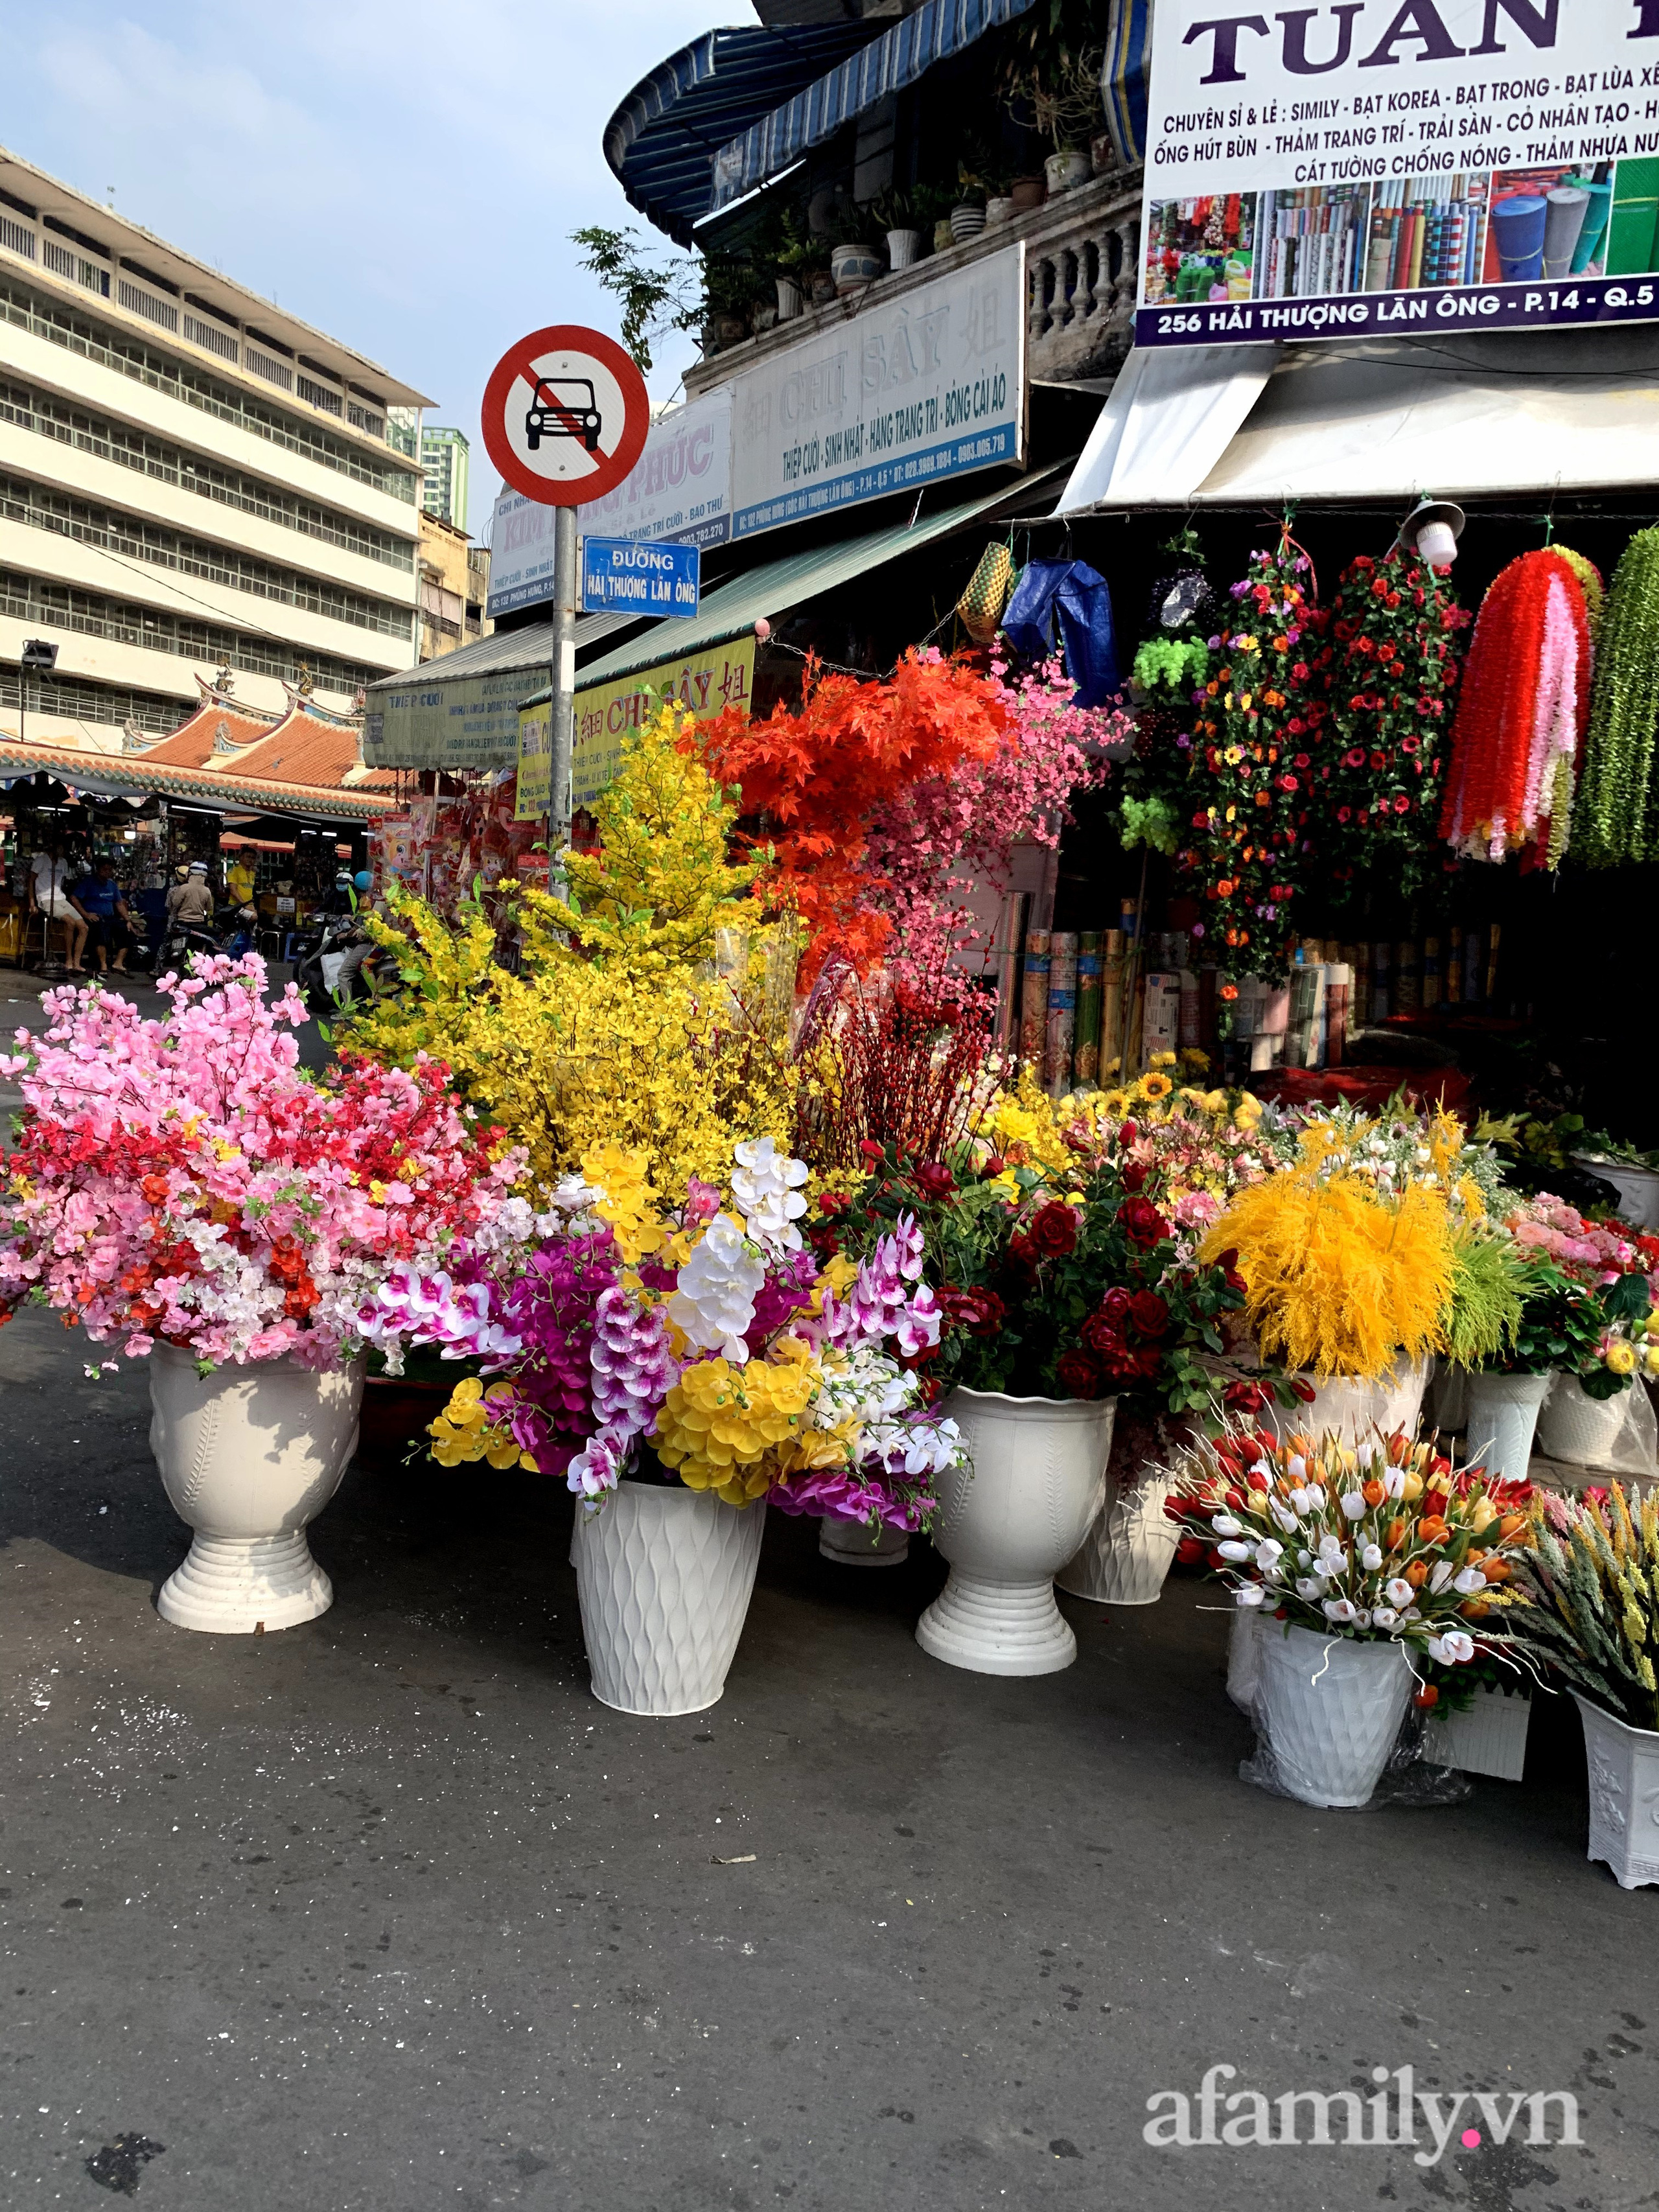 Sài Gòn: Rực rỡ sắc xuân các sản phẩm truyền thống ở phố Hải Thượng Lãn Ông cận Tết Tân Sửu 2021 - Ảnh 7.